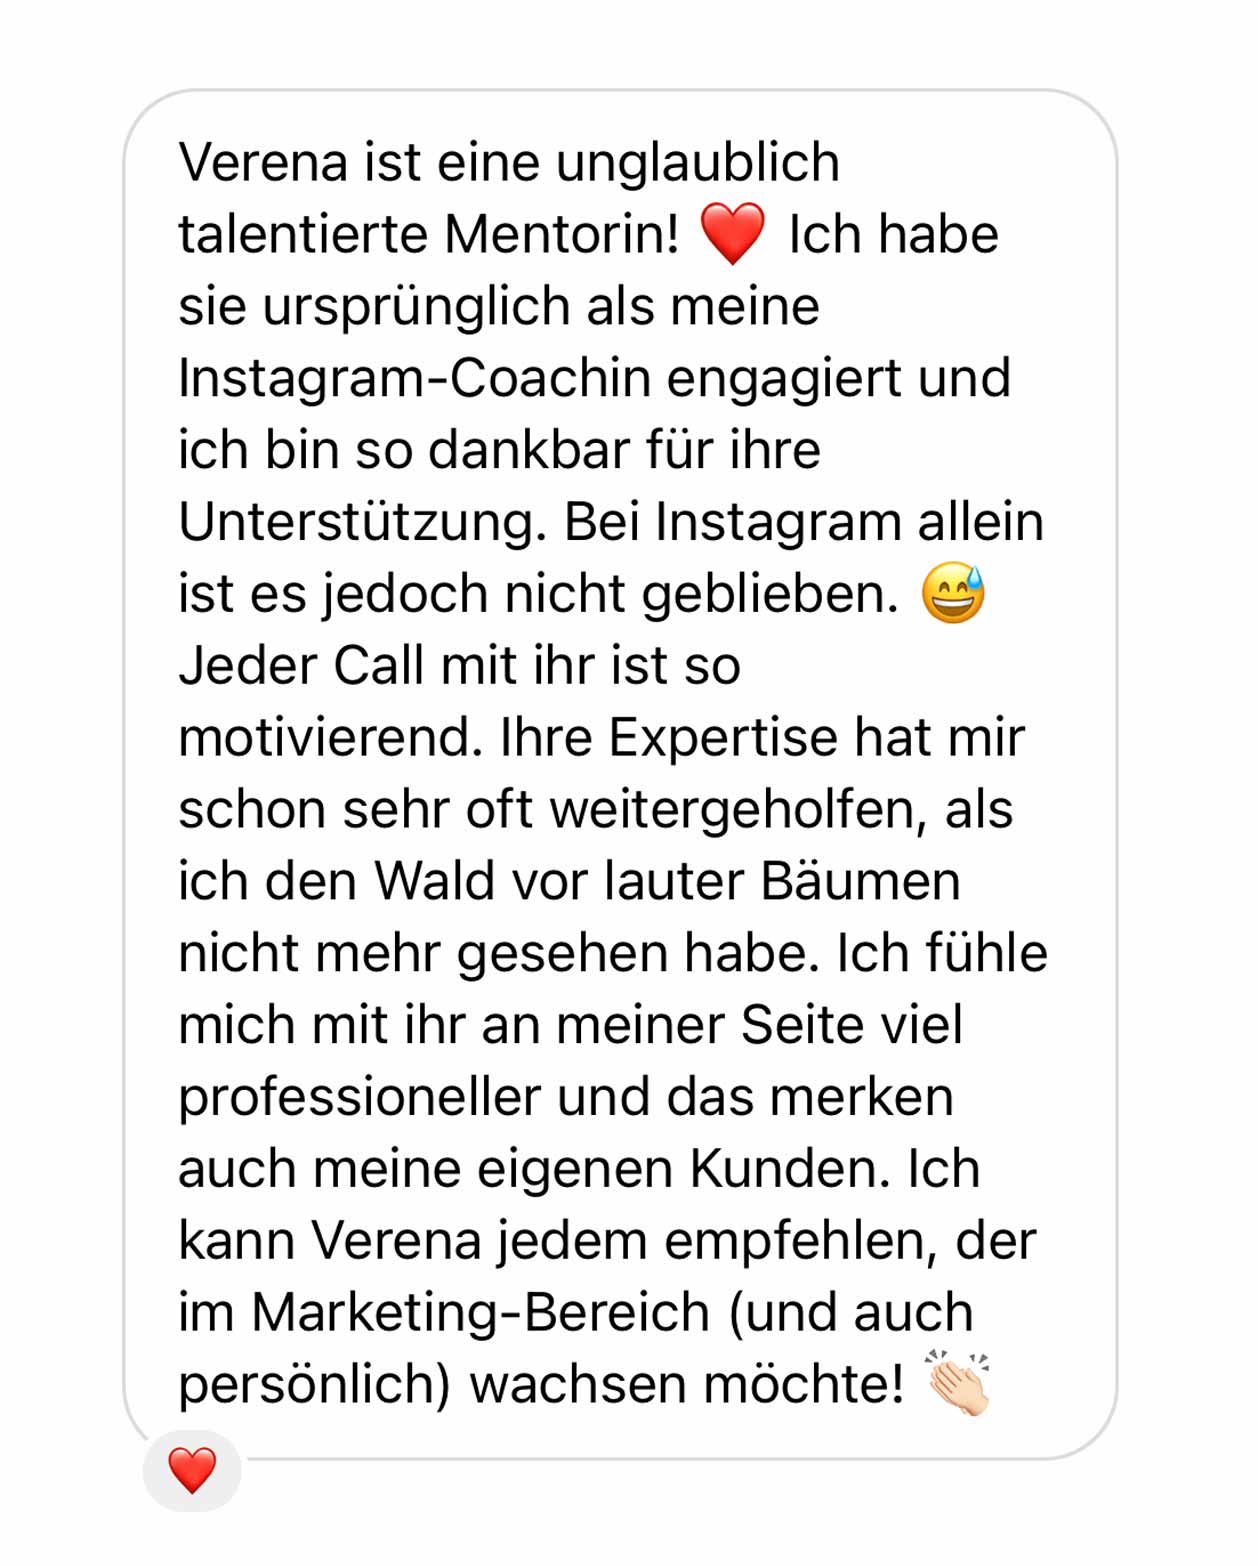 Mein Name ist Verena Ratz und ich coache und betreue Unternehmerinnen in ihrem Business. Ich unterstütze im Content-Marketing, betreue komplette Kanäle oder bin als Business Mentorin an deiner Seite. Verschaffe dir hier einen Überblick über mein Angebot. Deine Marketing-Agentur für organisches und nachhaltiges Content-Marketing aus Tirol.